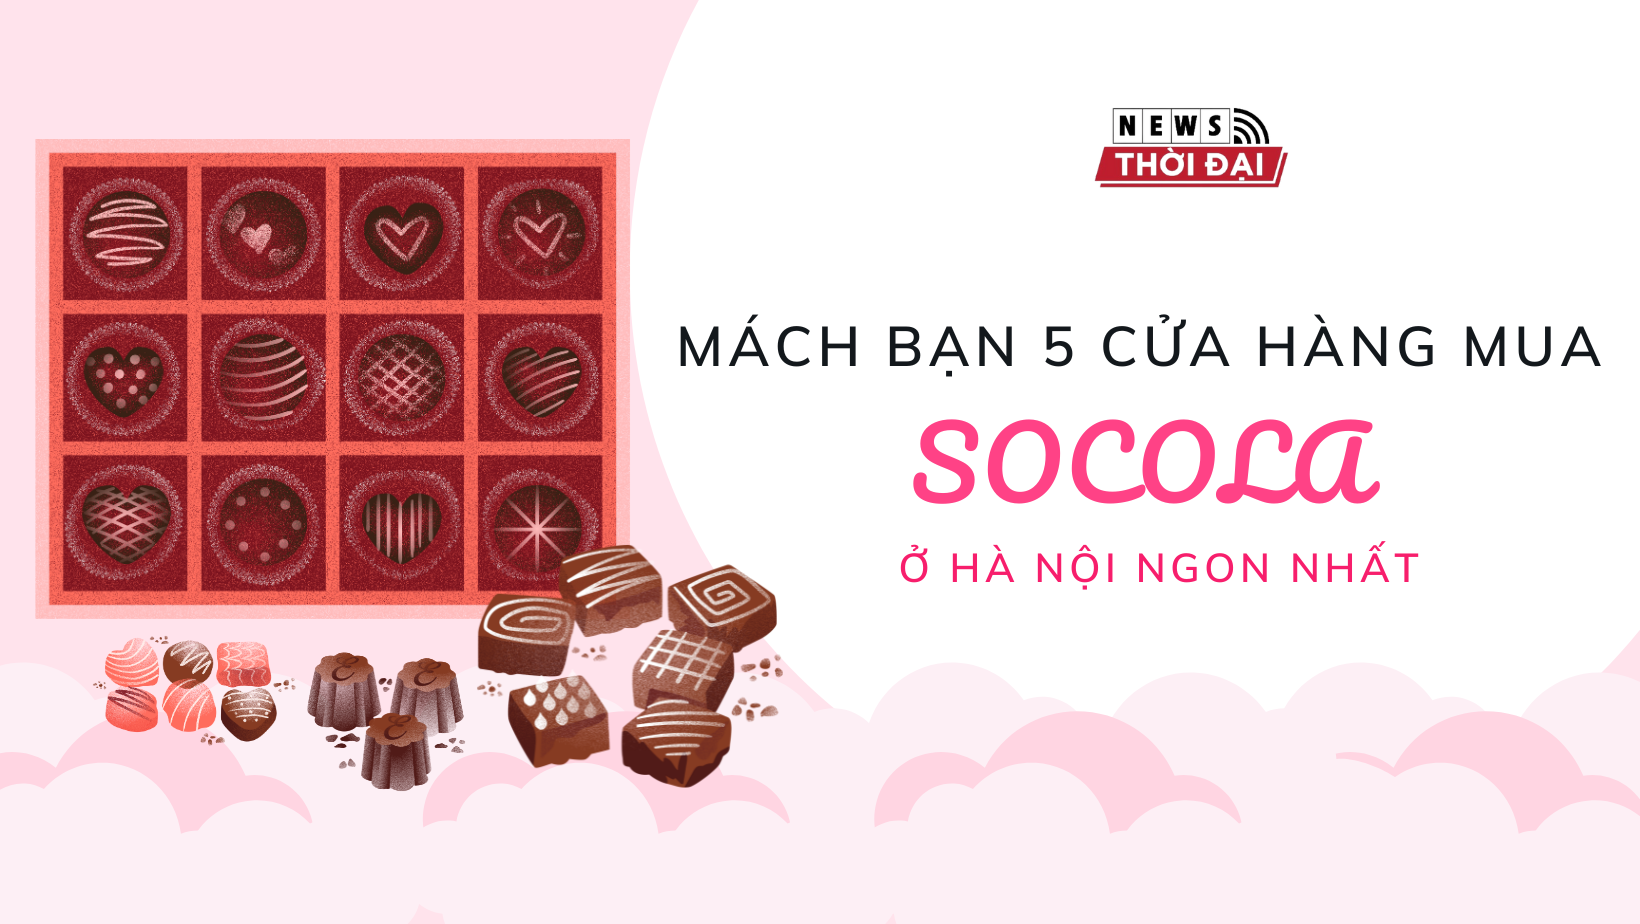 Mách bạn 5 cửa hàng mua socola ở Hà Nội ngon nhất